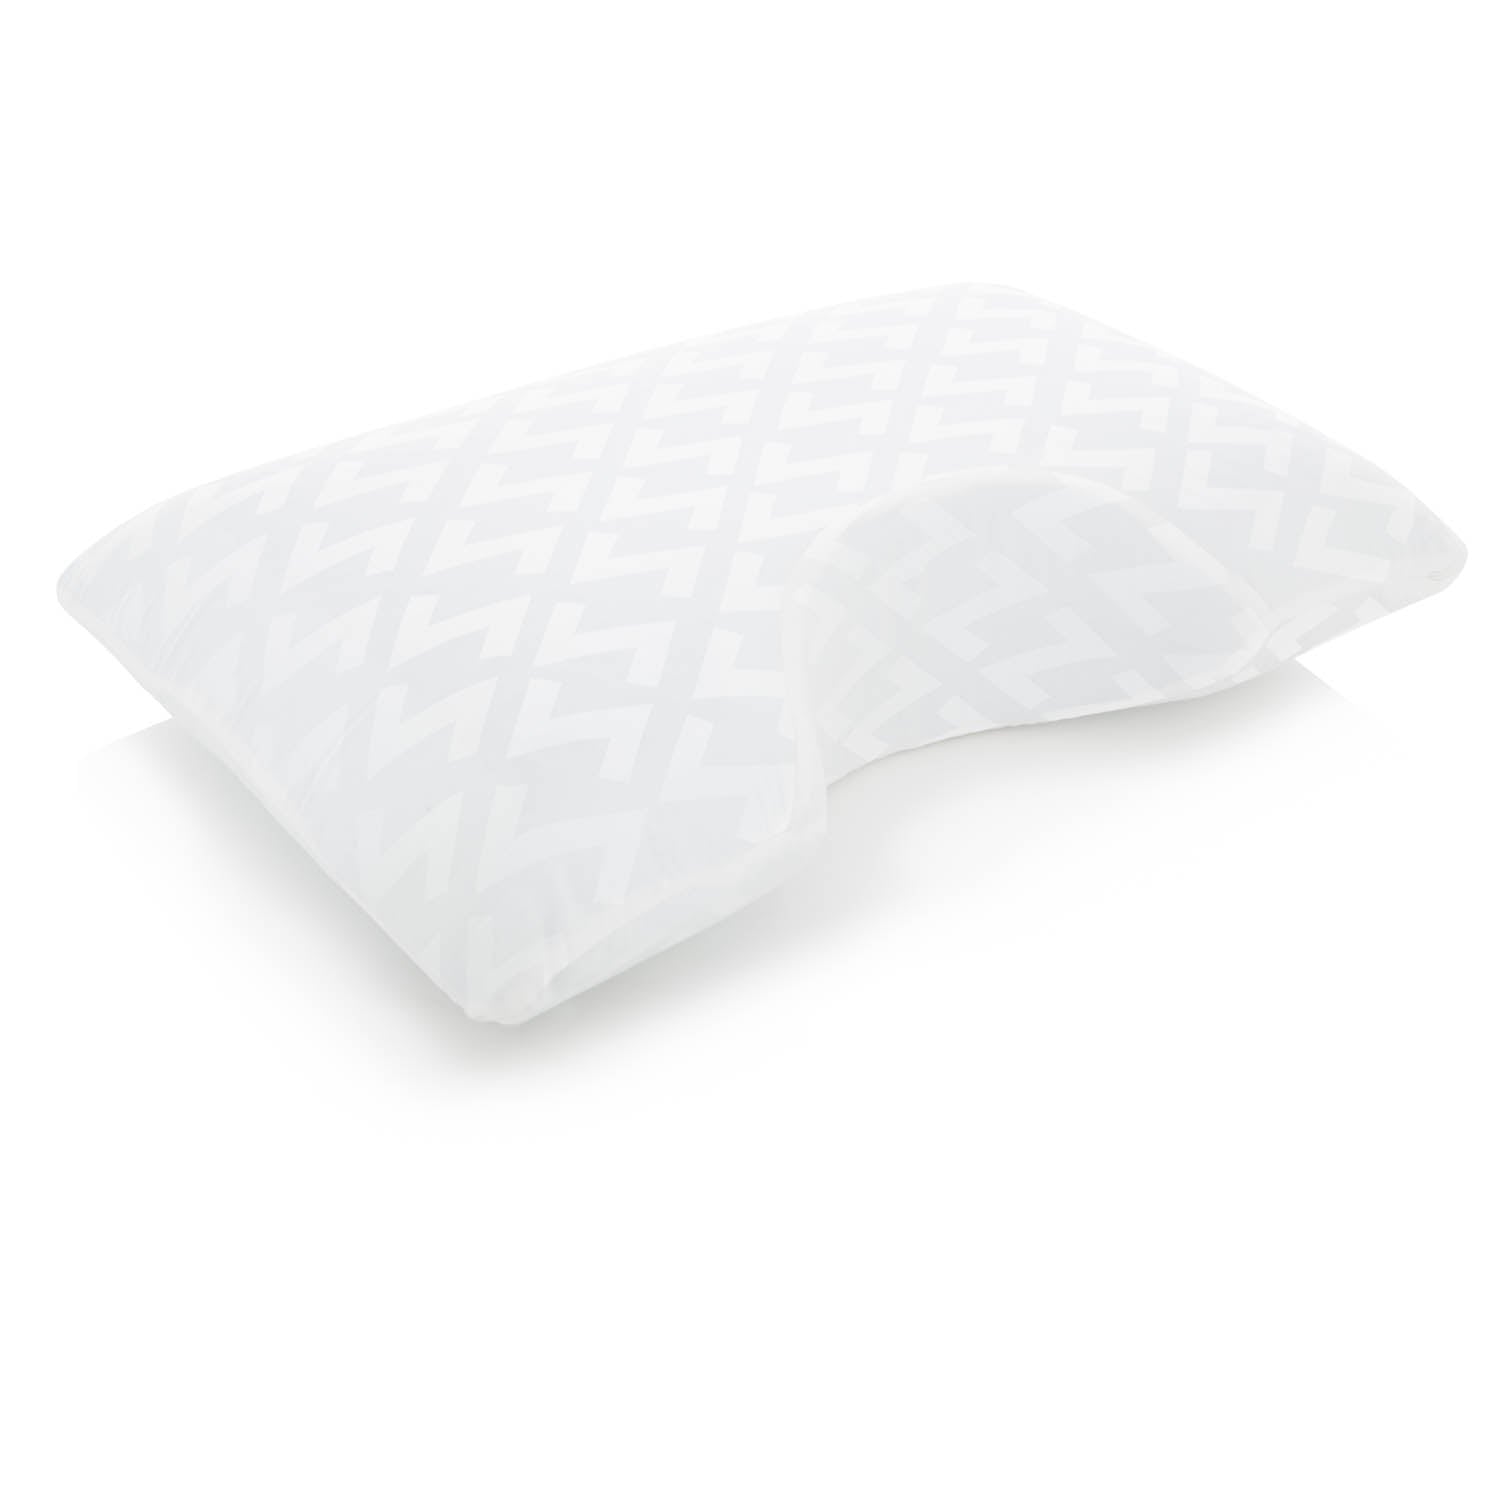 Shoulder Gel Dough Gel Pillow - Ultimate Comfort Sleep